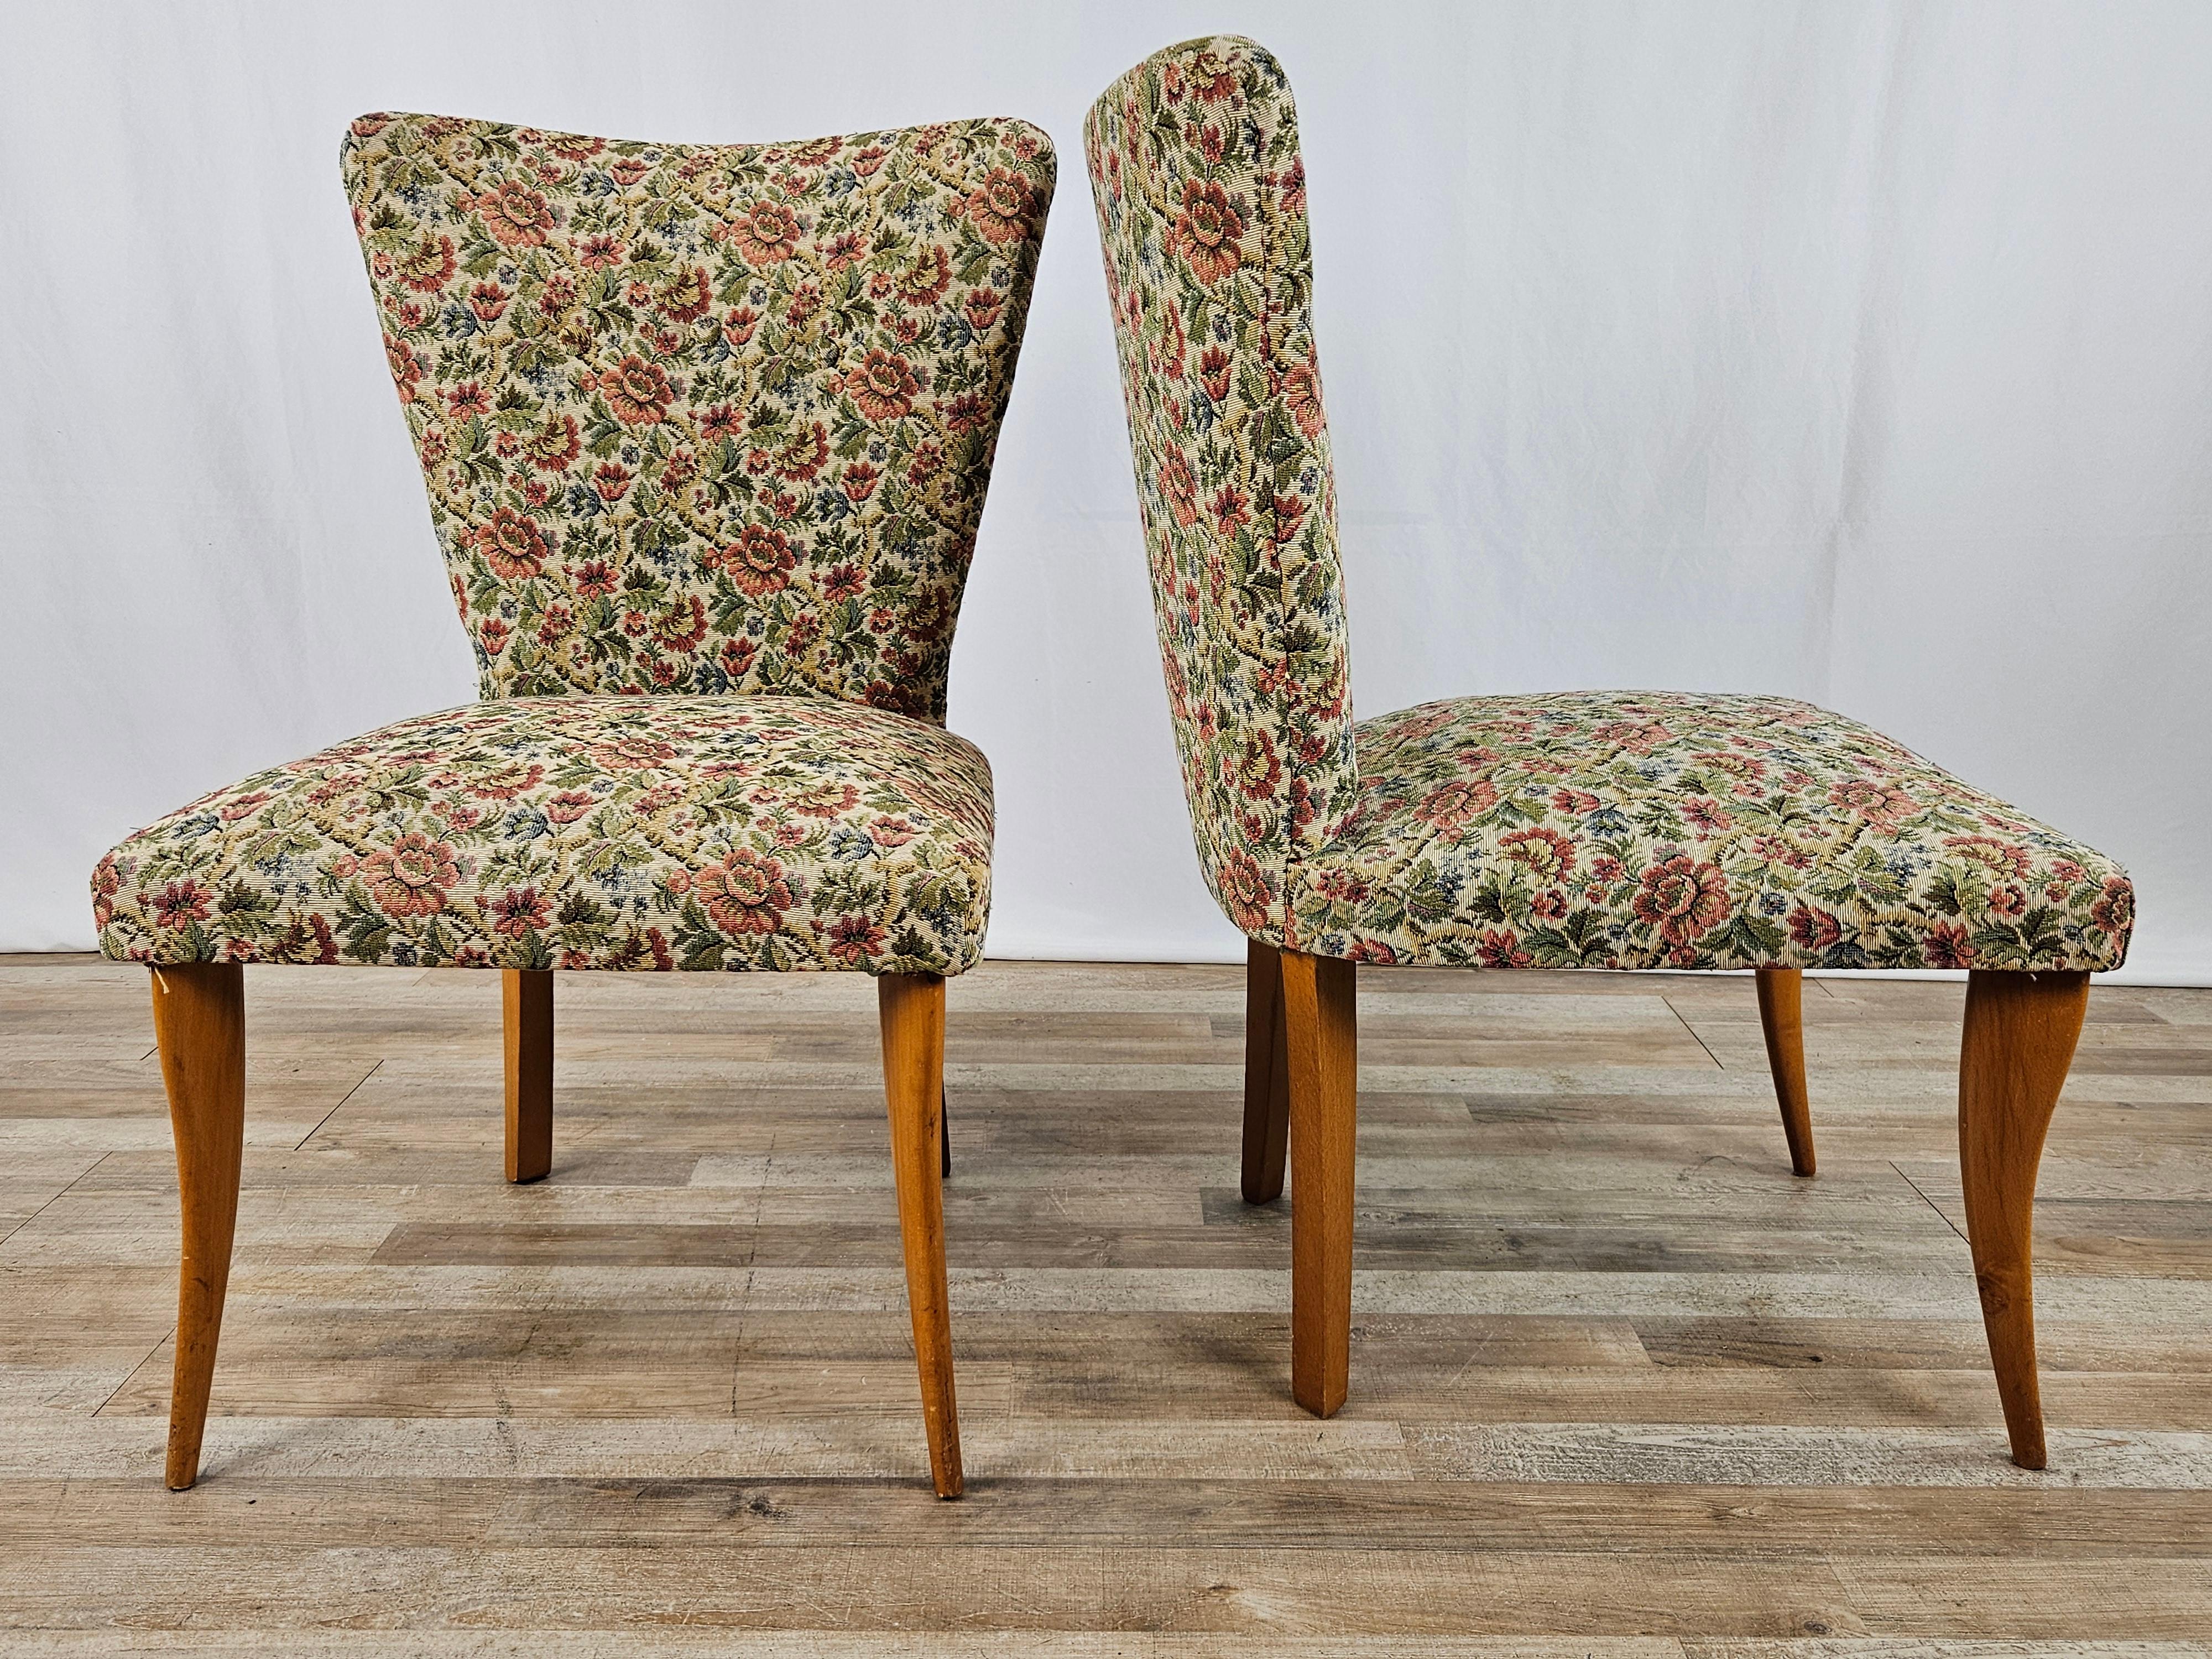 Coppia di poltroncine anni '50 in stile italiano con seduta e schienali imbottiti e rivestiti da una particolare fantasia floreale.

Una delle due presenta un alone sullo schienale come da foto.